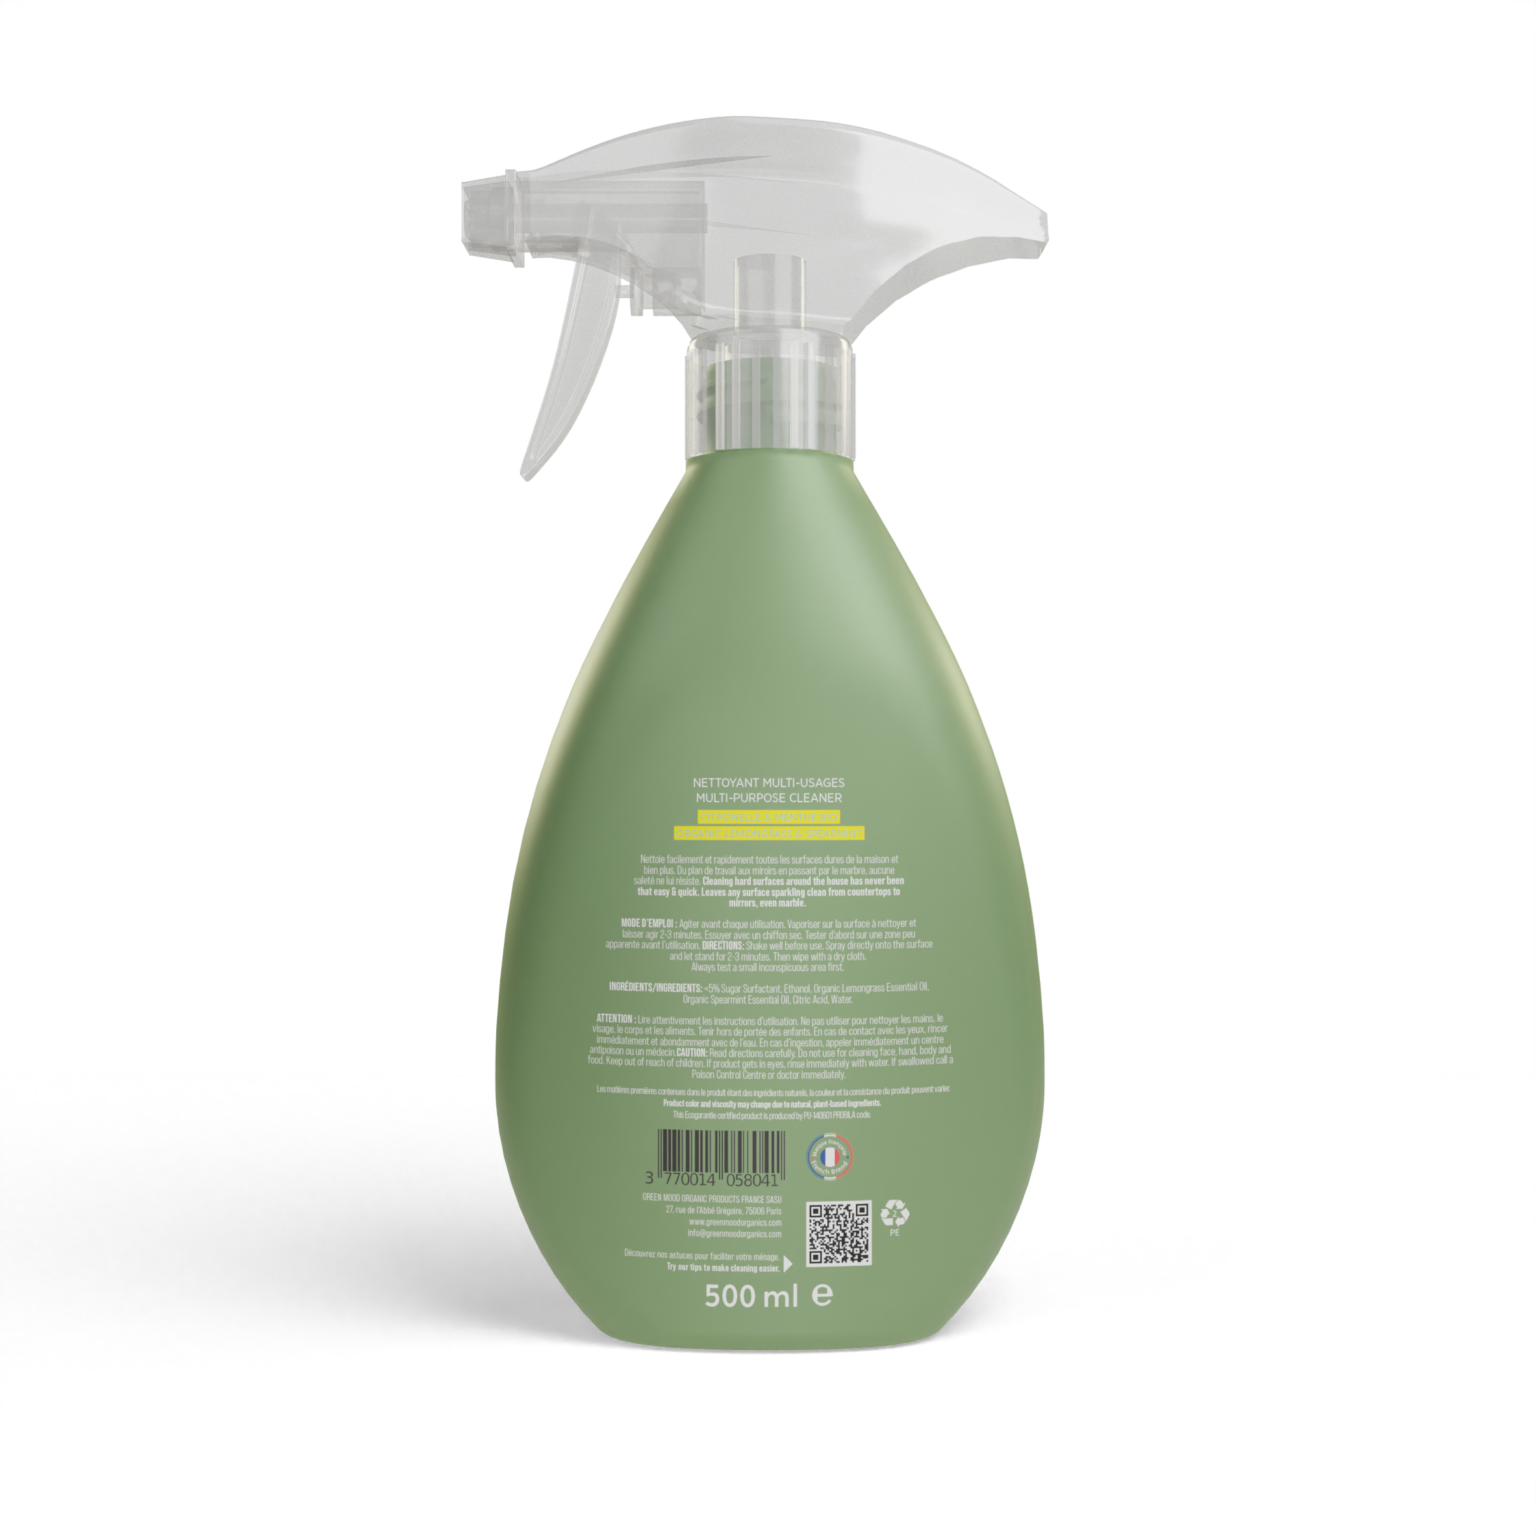 Spray nettoyant multi usage au vinaigre blanc, la désinfection écolo!